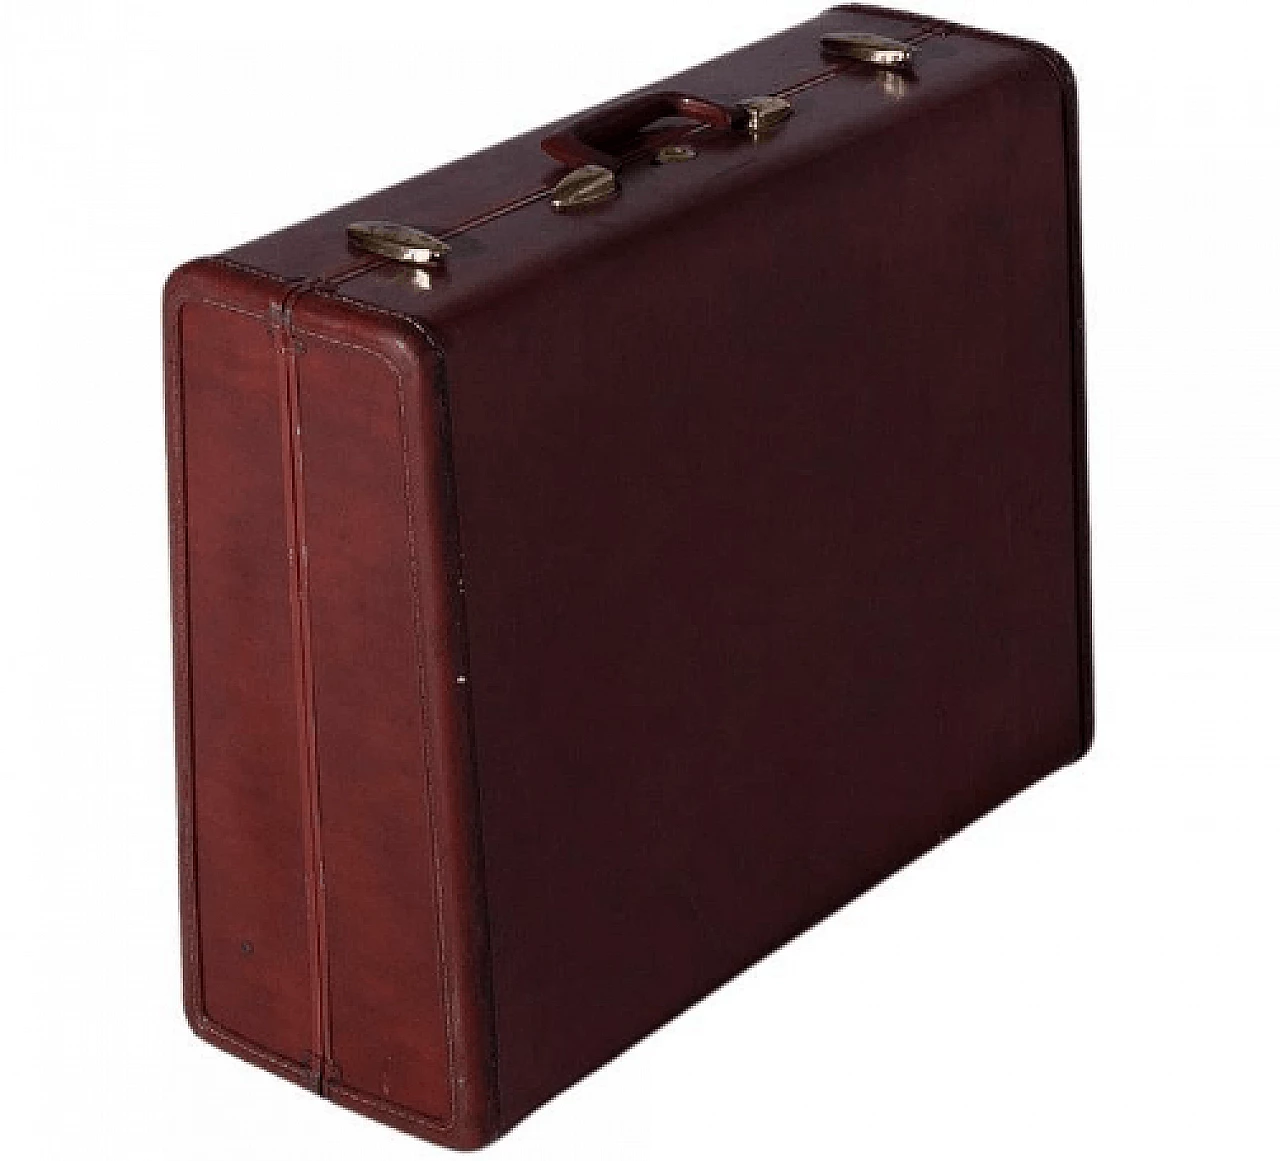 Leather Samsonite suitcase, 1950s 1